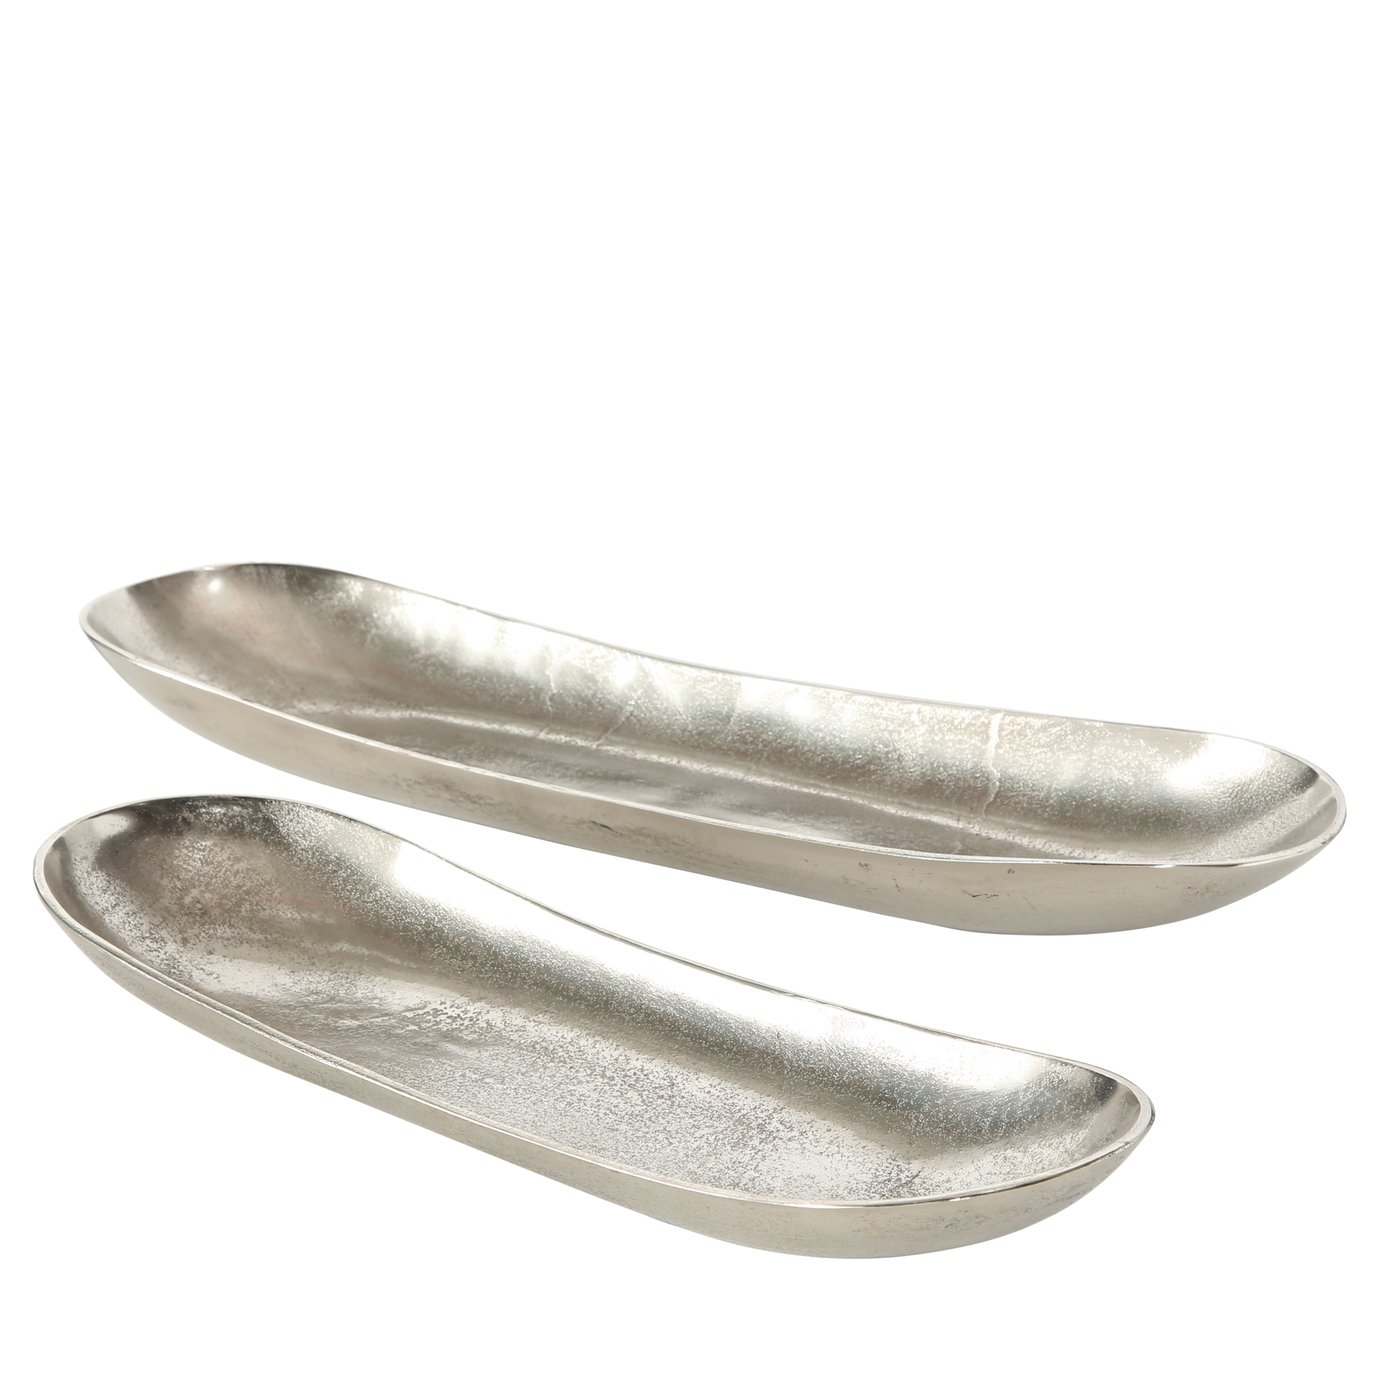 XL Deko Schale "Bean" oval silber 2er Set - L52-64cm, 6287500, 4020606769671